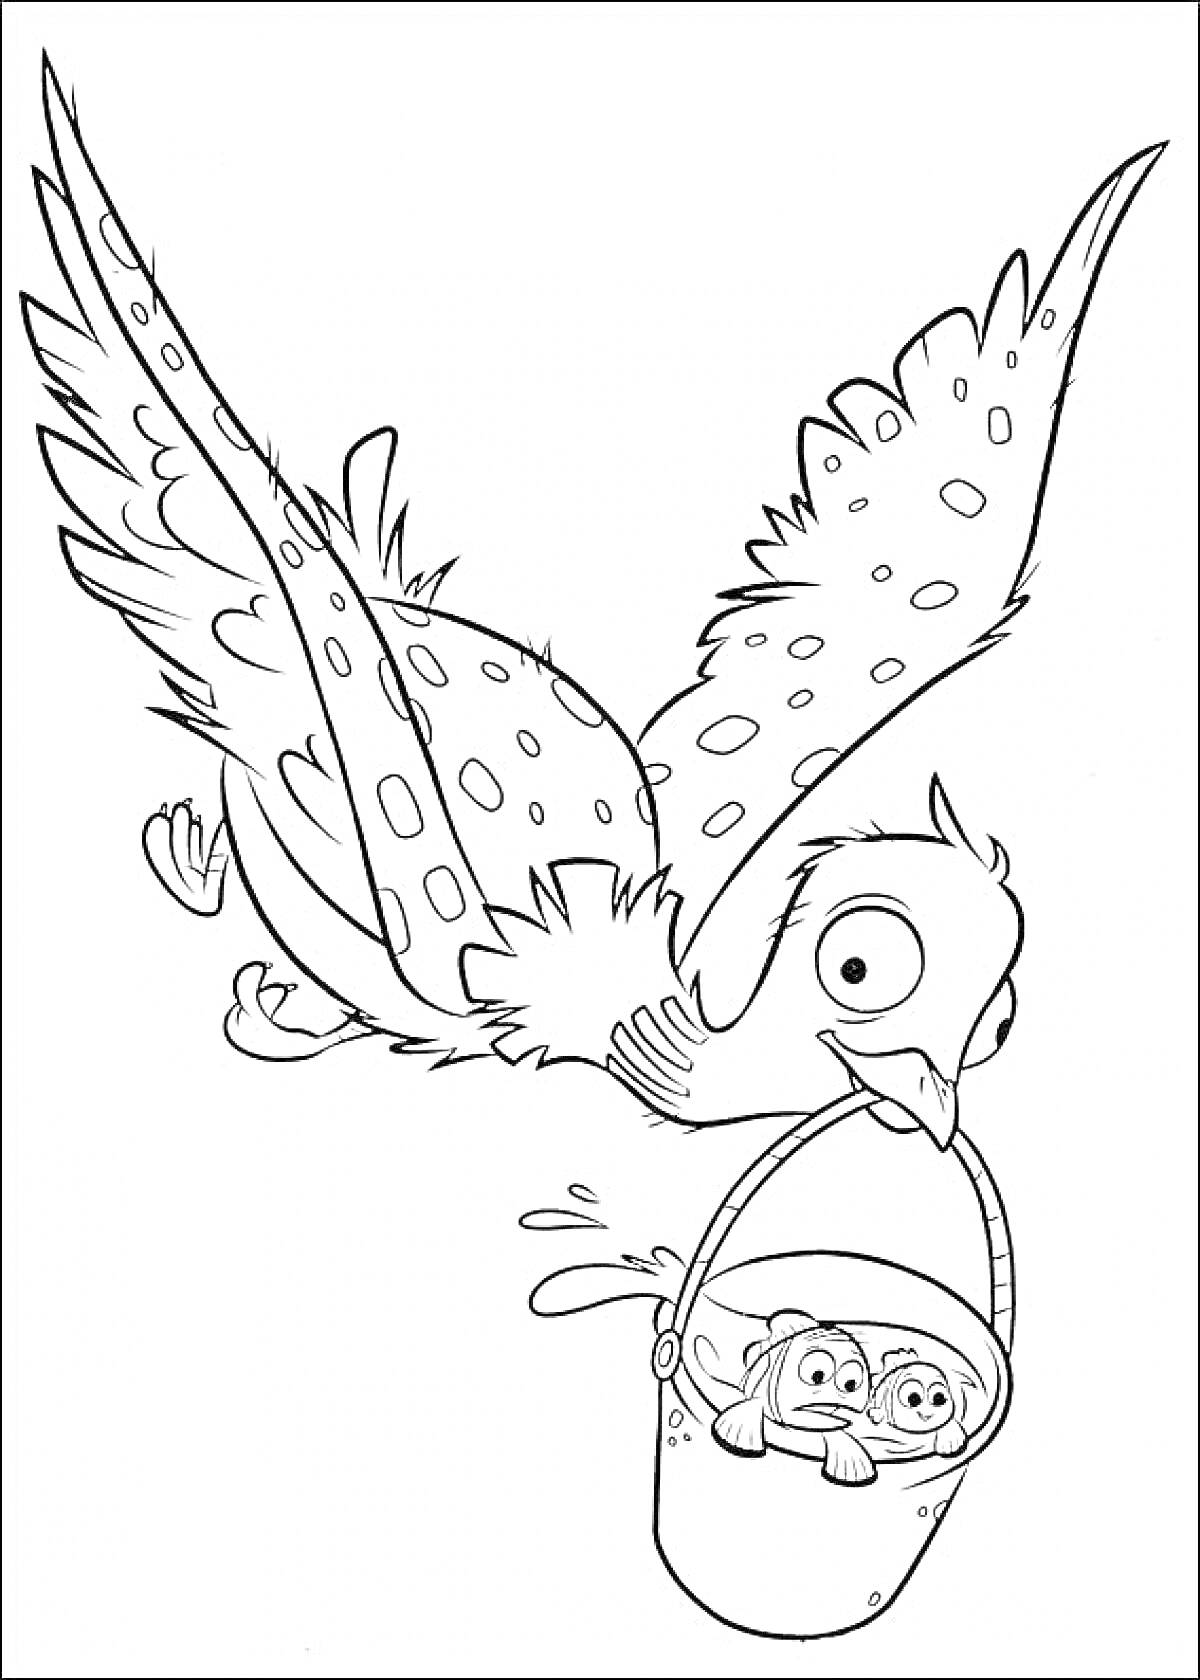 Раскраска Птица летит, держит ведро клювом, в ведре два мультипликационных персонажа